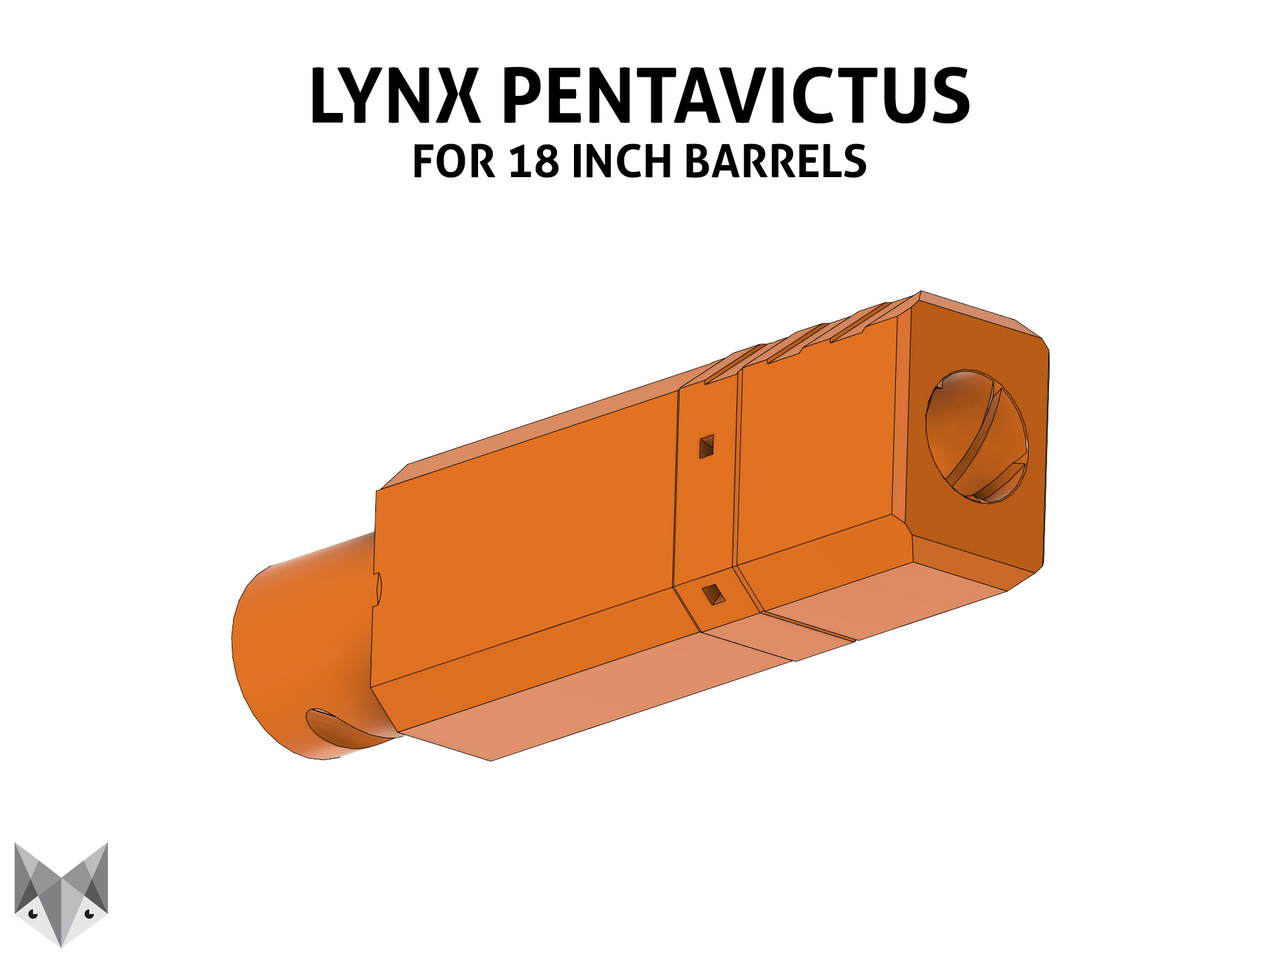 Lynx - Pentavictus Scar Barrel (18 inch Barrel) by Thanh